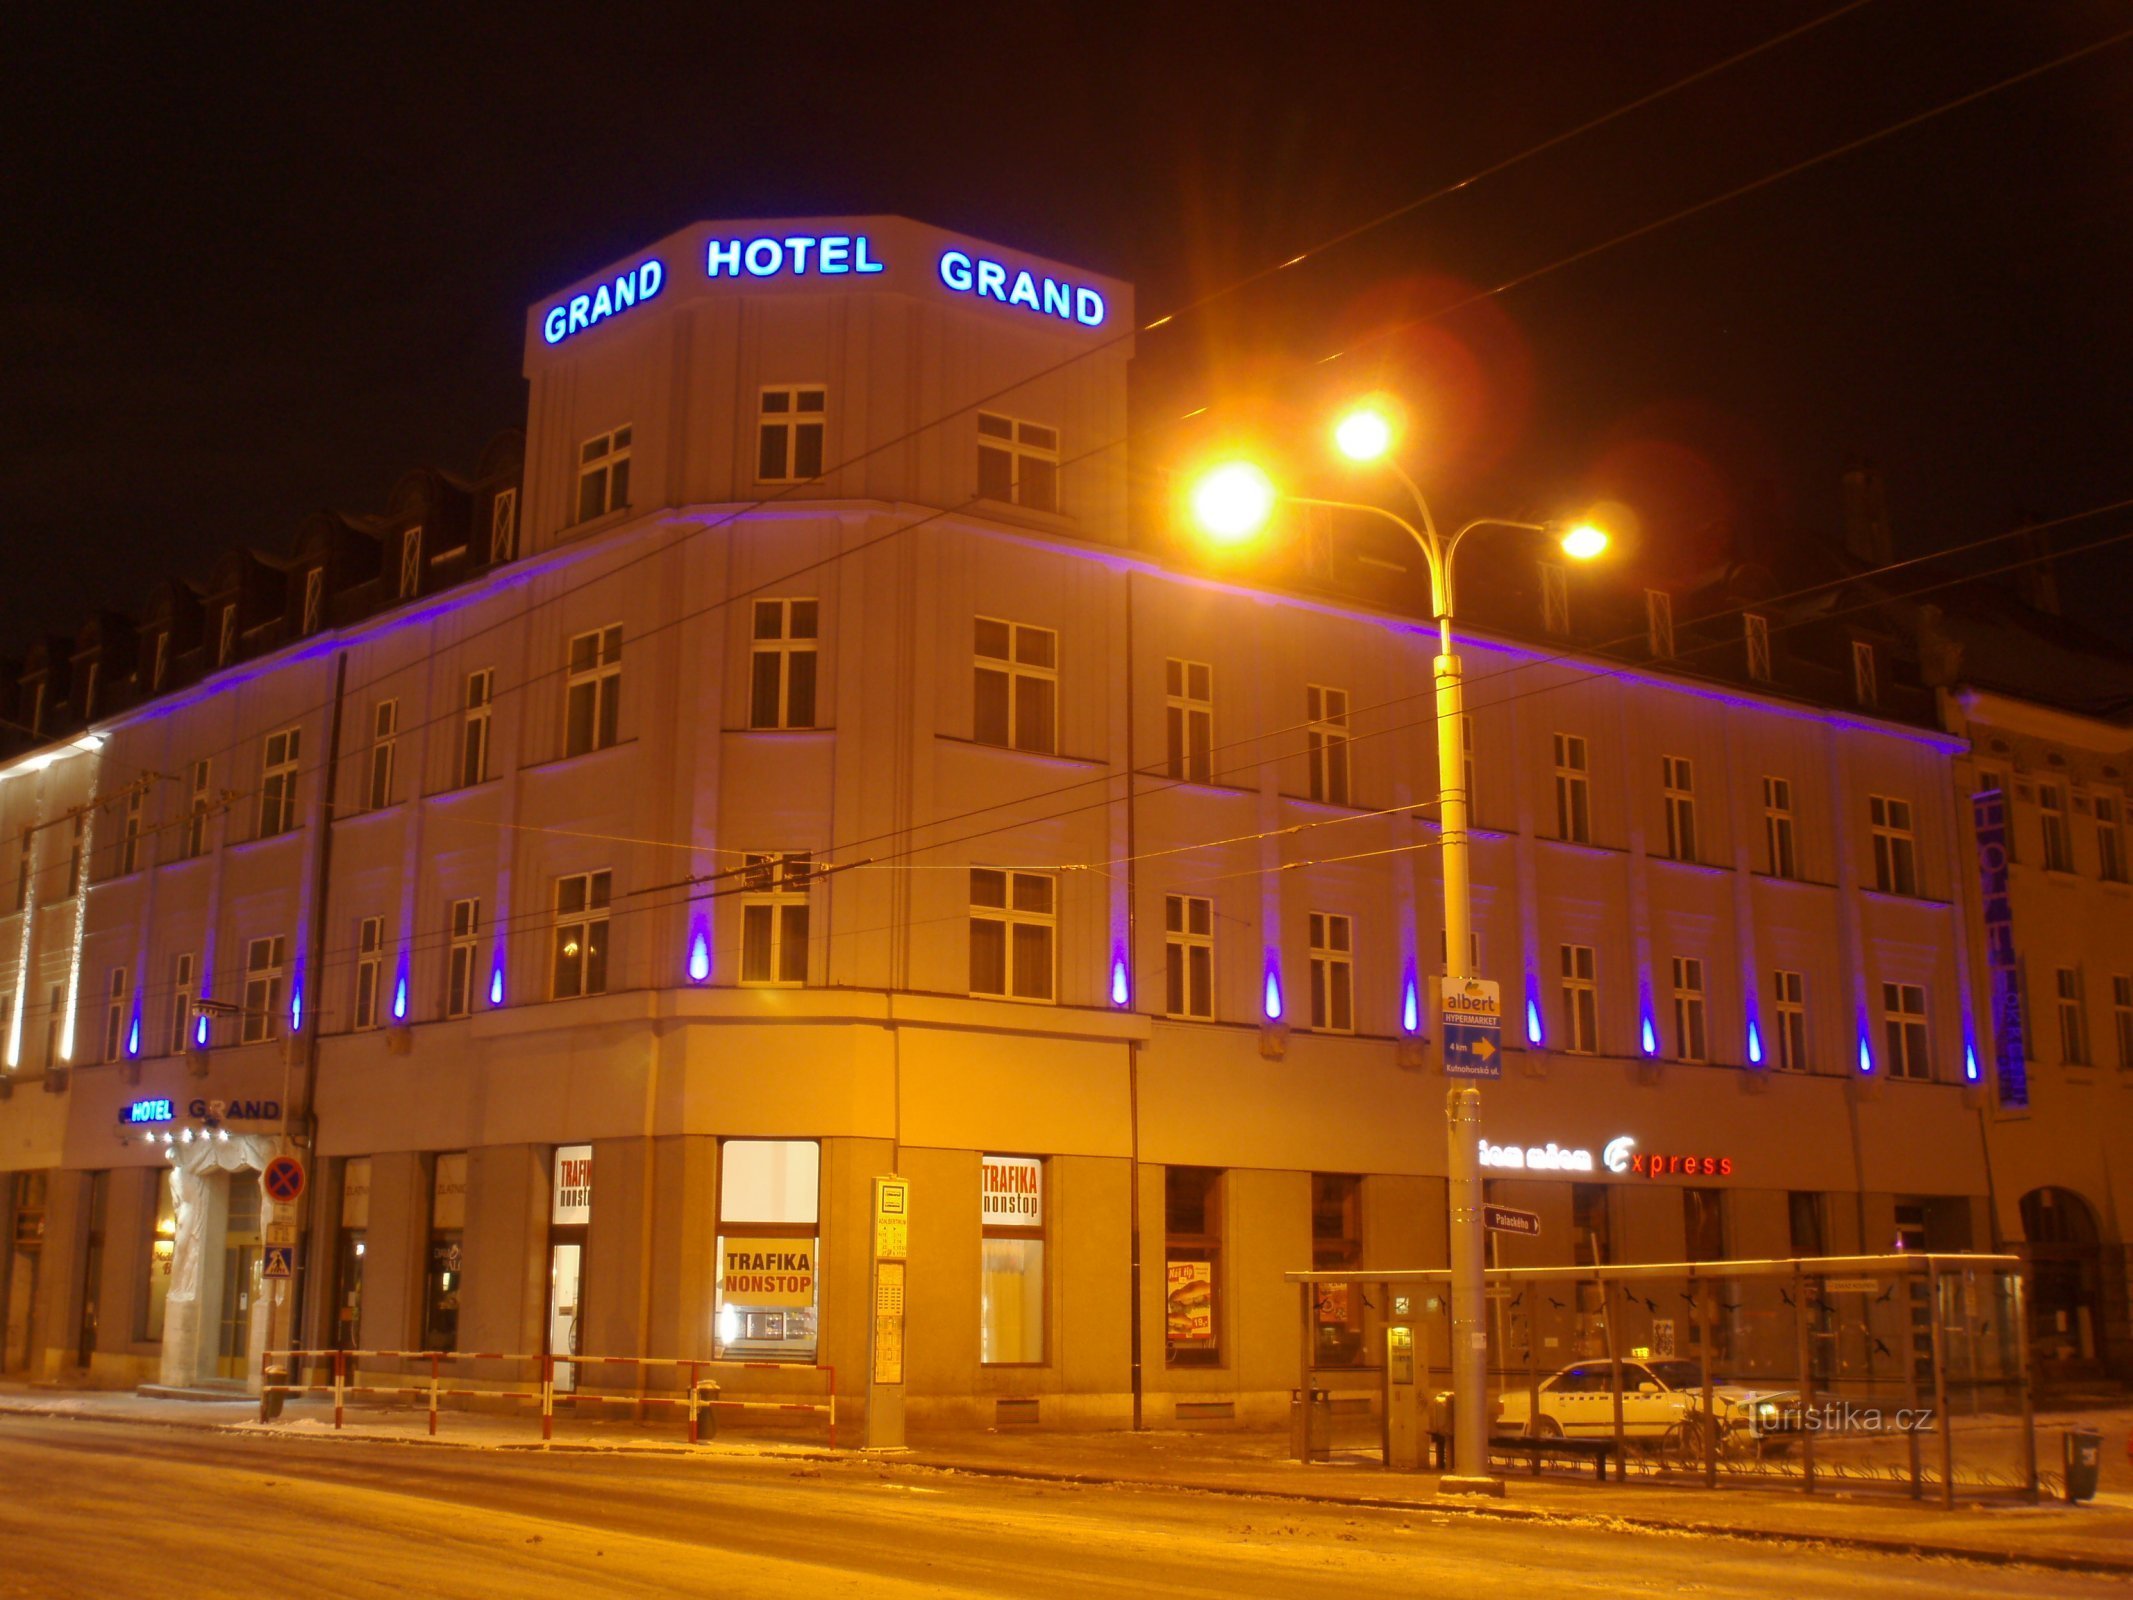 グランドホテル アーバン (Hradec Králové、26.12.2010 年 XNUMX 月 XNUMX 日)